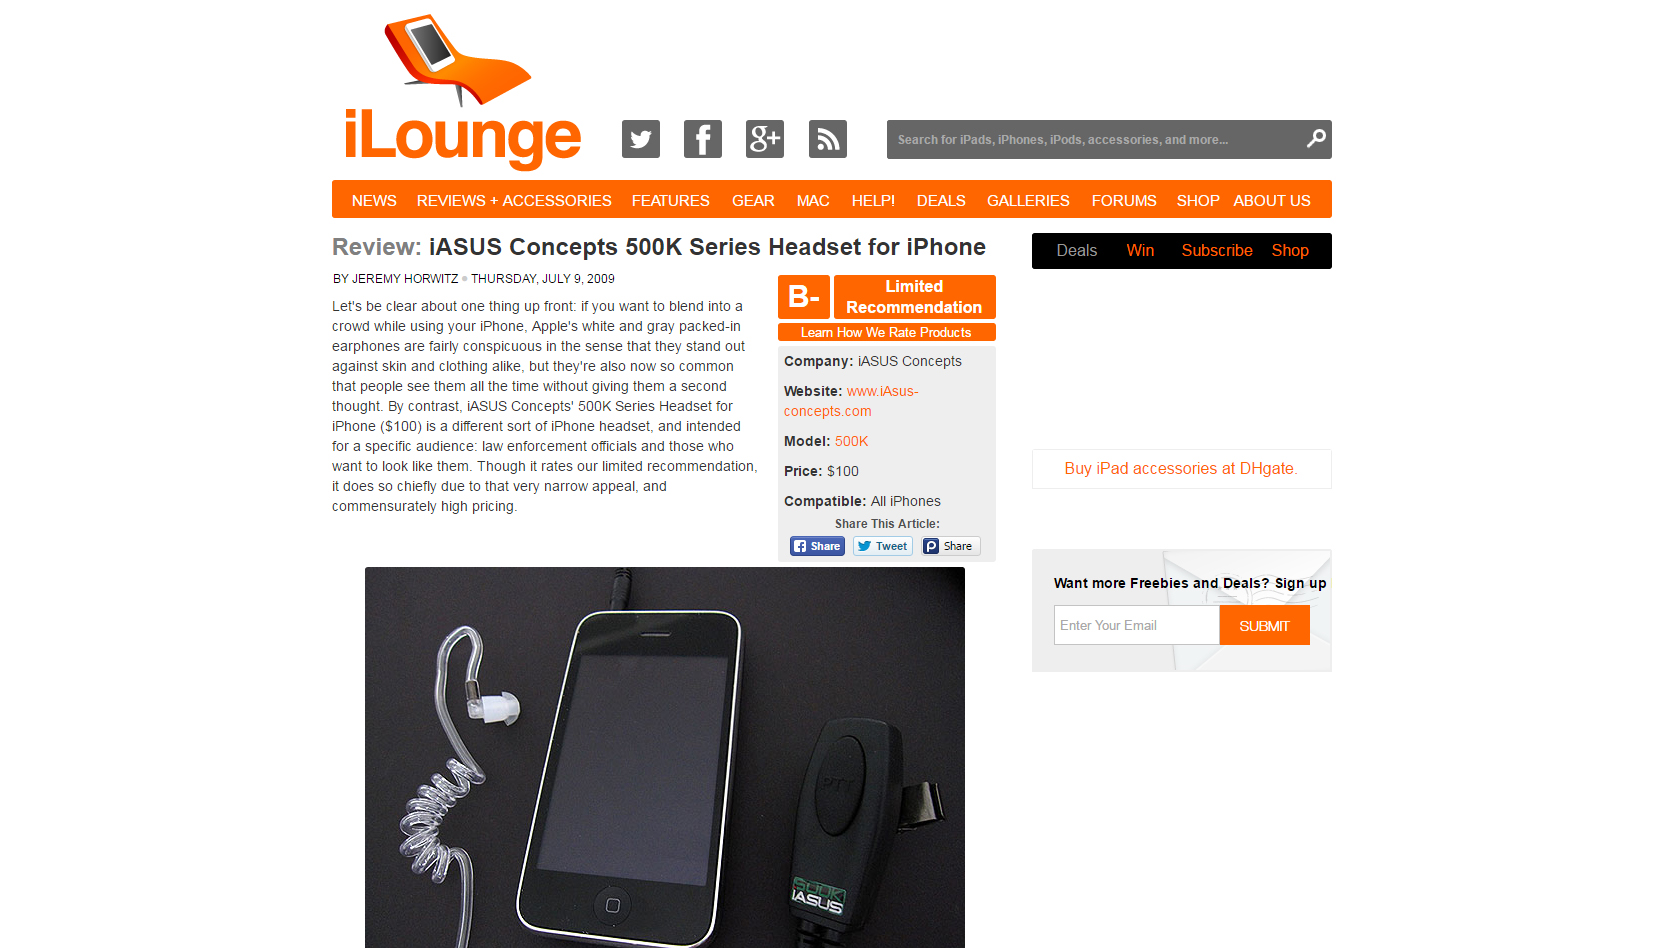 PRESS RELEASE: 500K Headset on iLounge